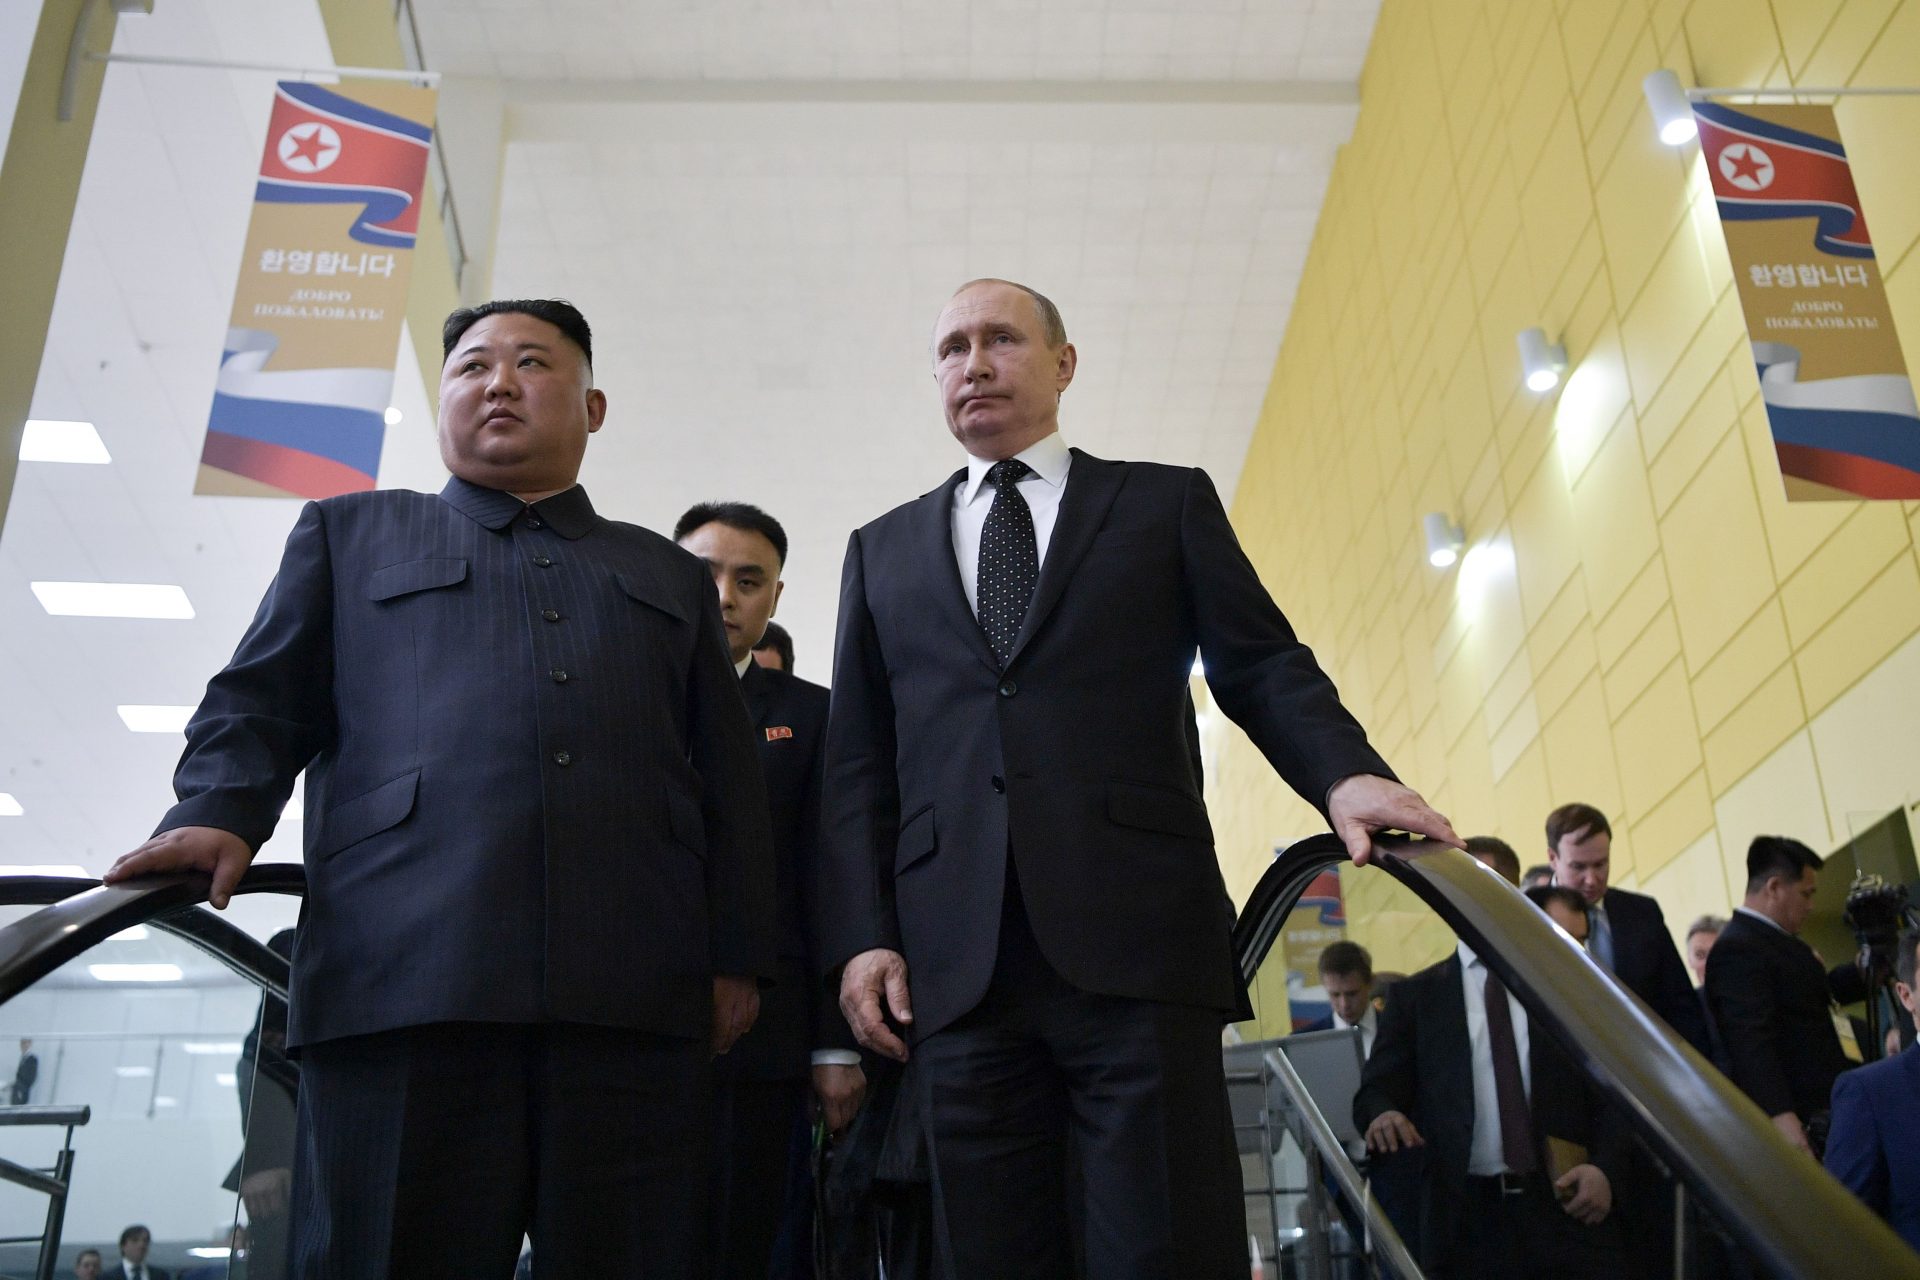 Le renforcement de la collaboration militaire entre la Russie et la Corée du Nord n'est pas une bonne chose